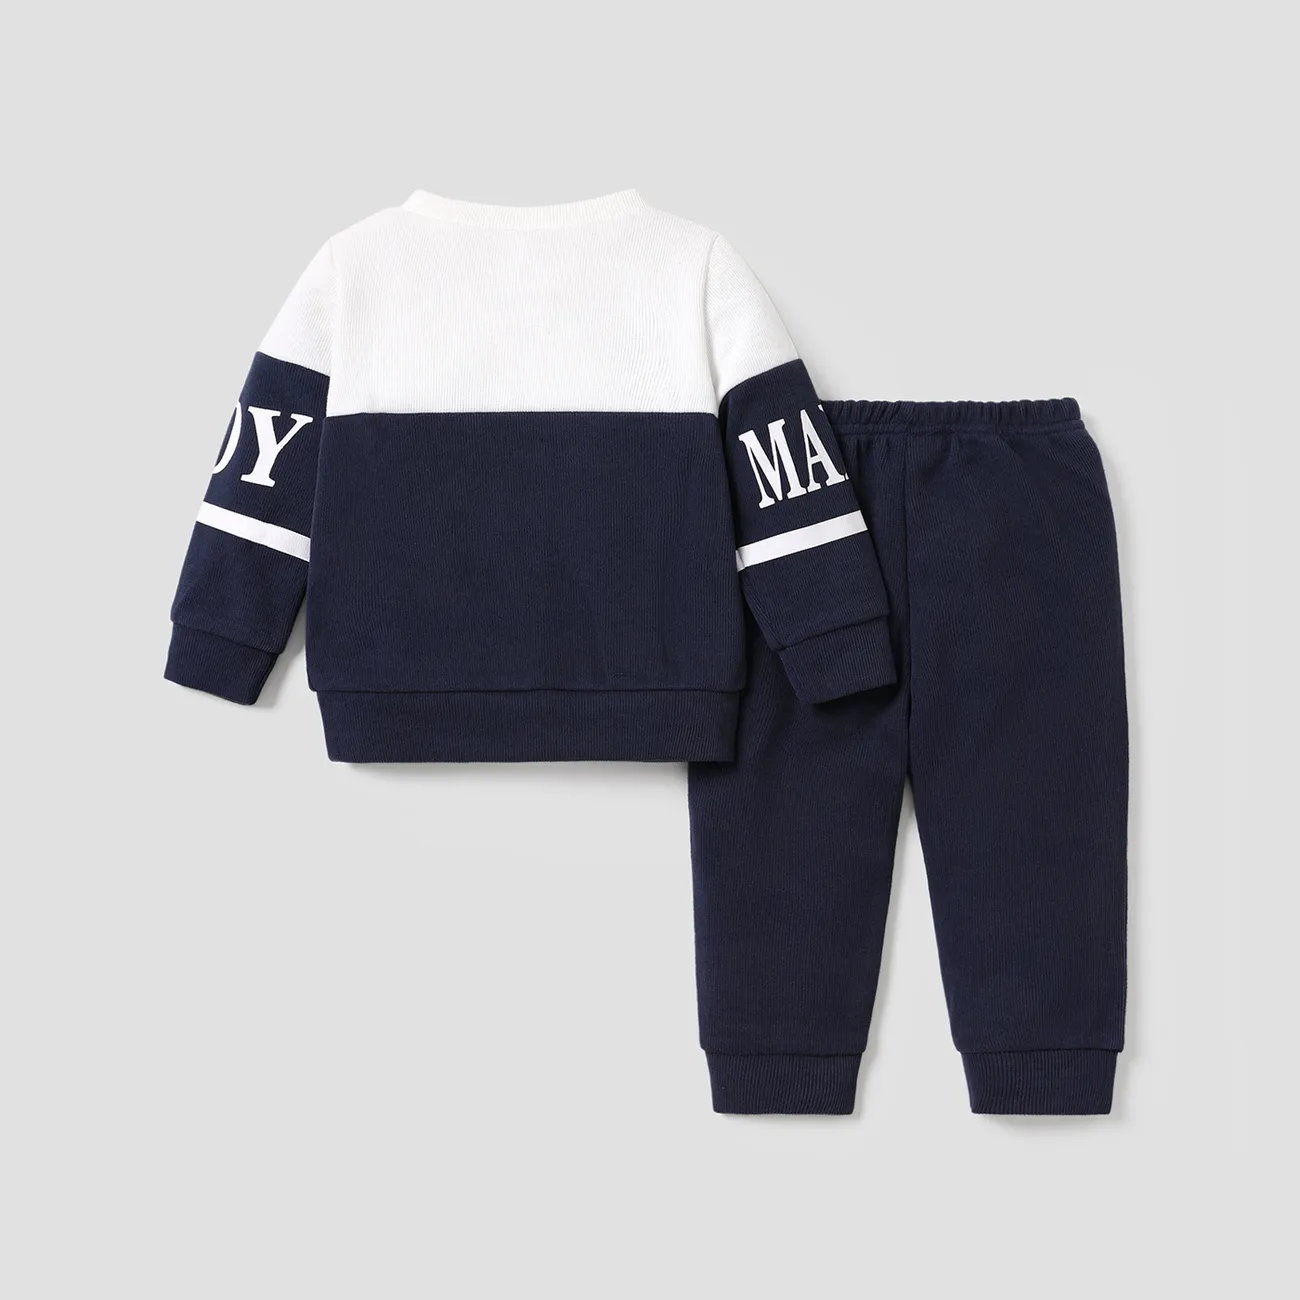 2 unidades Bebé Menino Costuras de tecido Casual Manga comprida Conjunto para bebé Azul Escuro / Branco big image 1